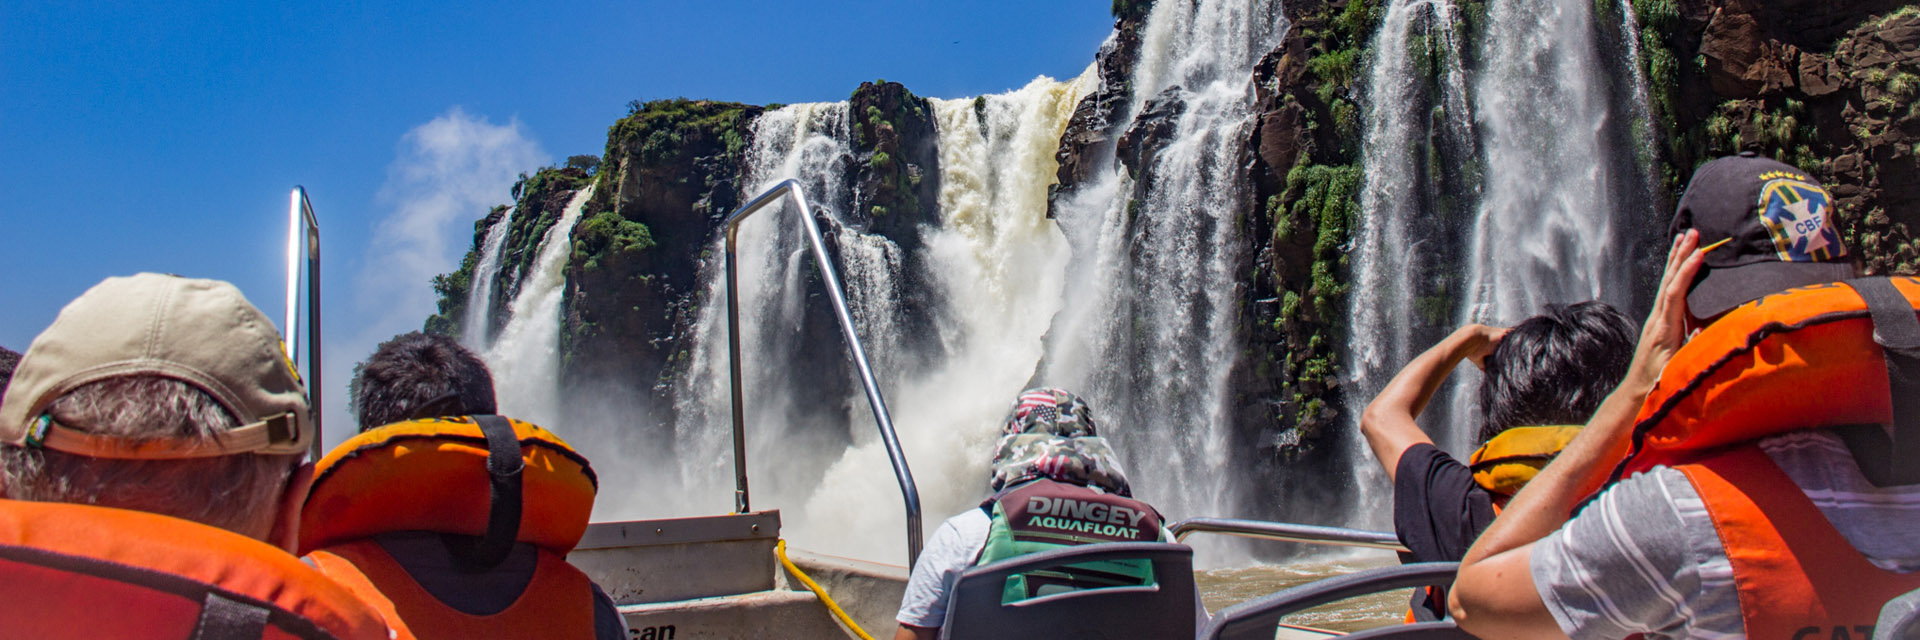 Passeios em Foz do Iguaçu, Dreams Park Show